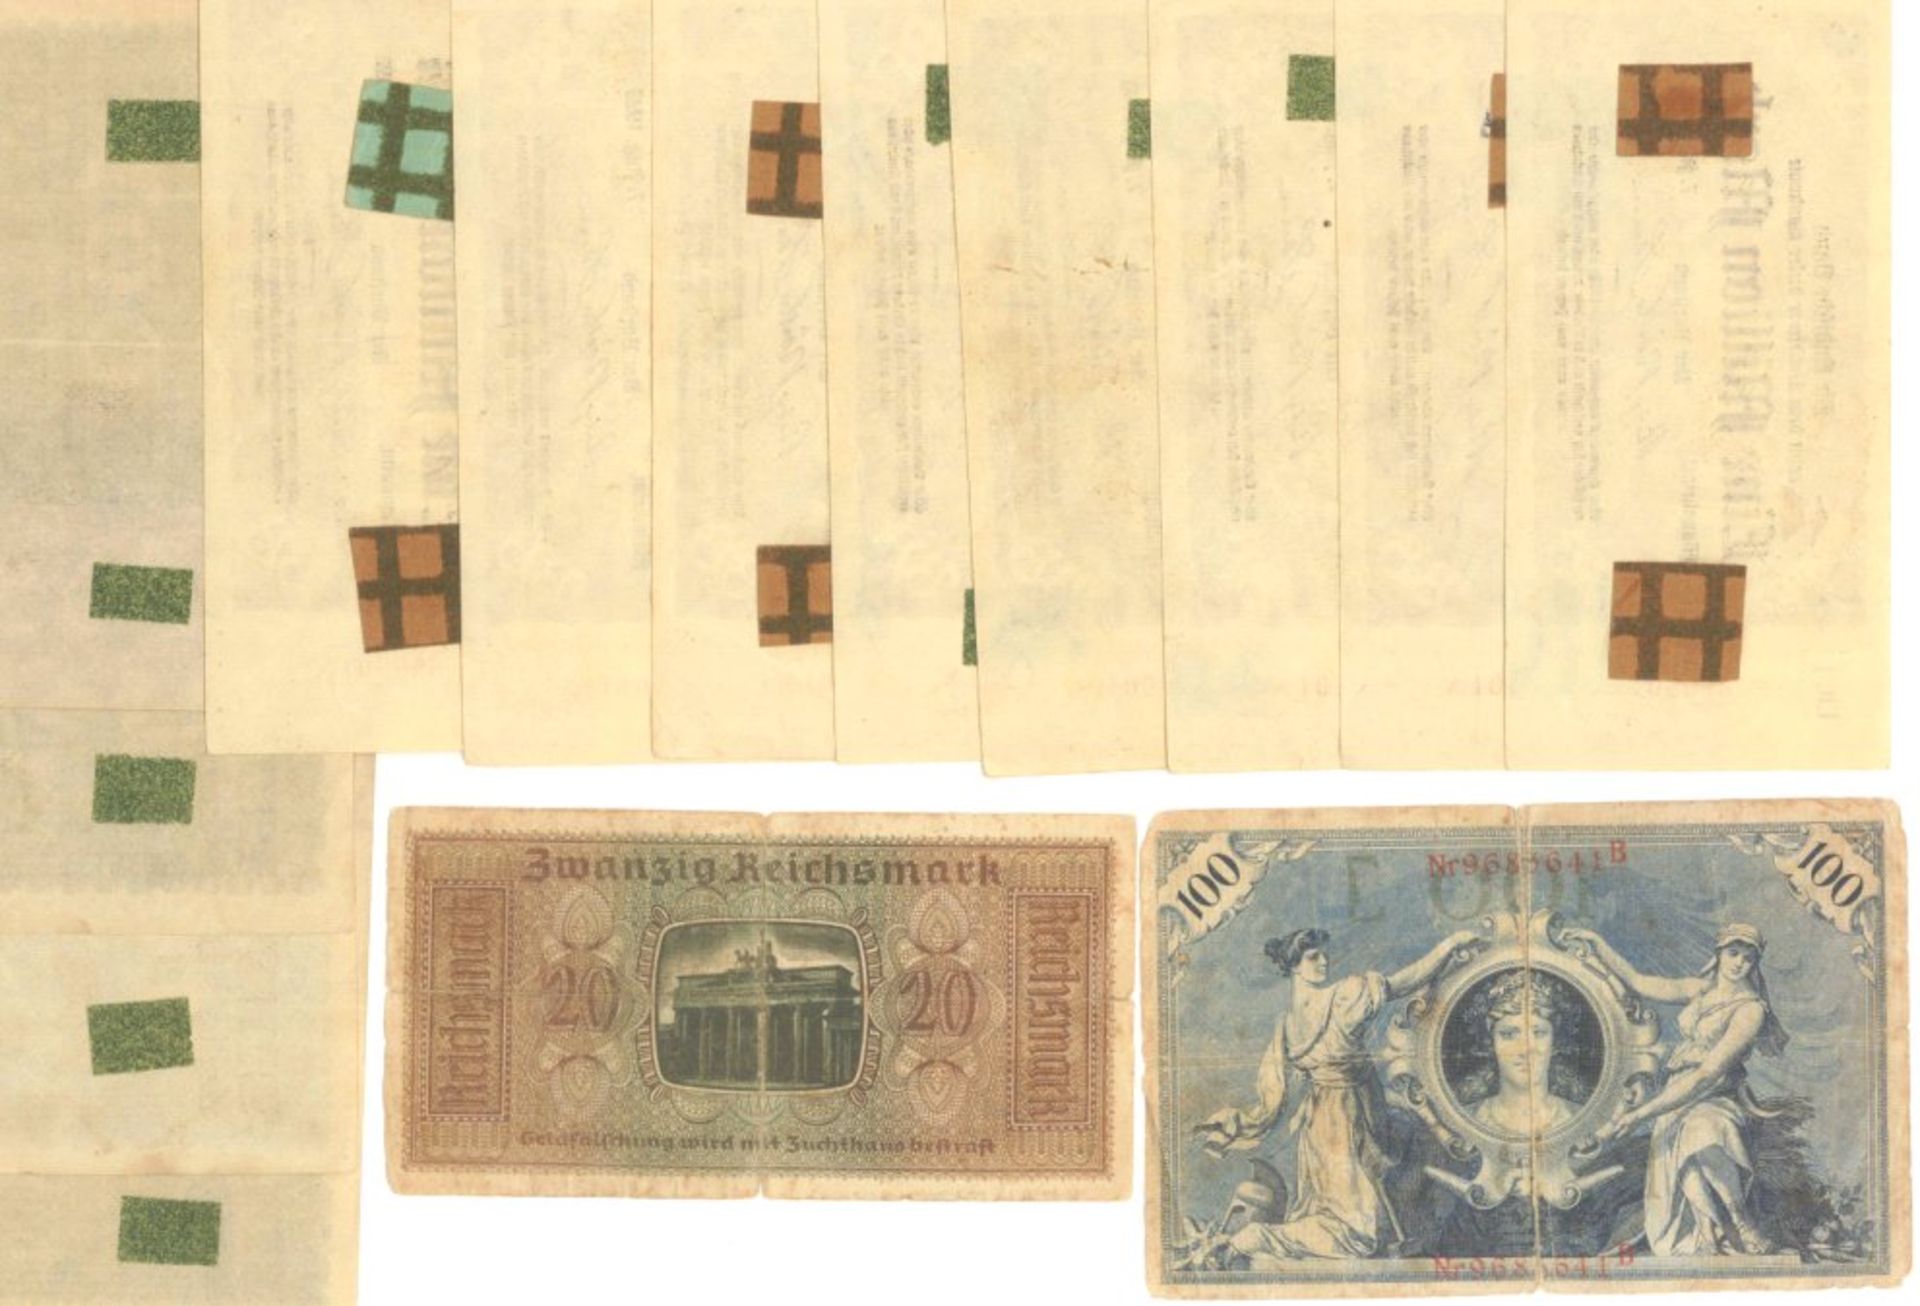 1923 Deutsches Reich INFLATION, BEHELFSBANKNOTENwohl amtliche oder halbamtliche Behelfsbanknoten - Bild 3 aus 3